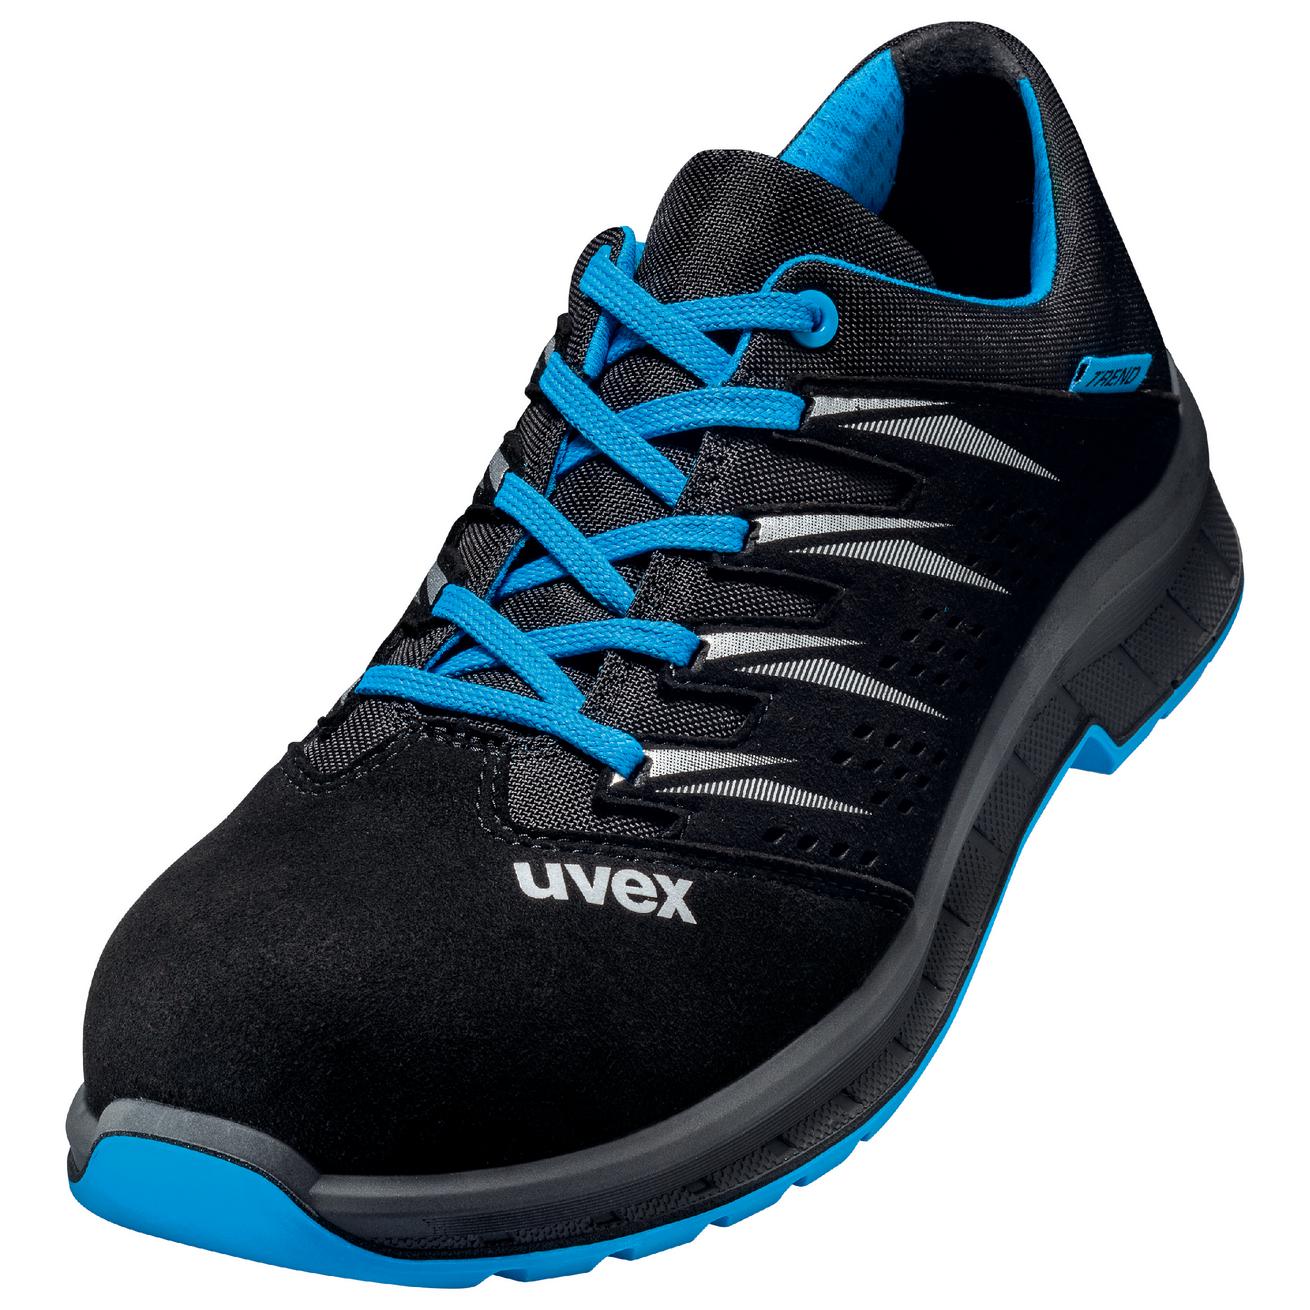 Perf. polobotka obuv uvex 2 trend, šíře 11, S1 SRC, černá/modrá 6937 Velikost: 46, Kód produktu: 6937846